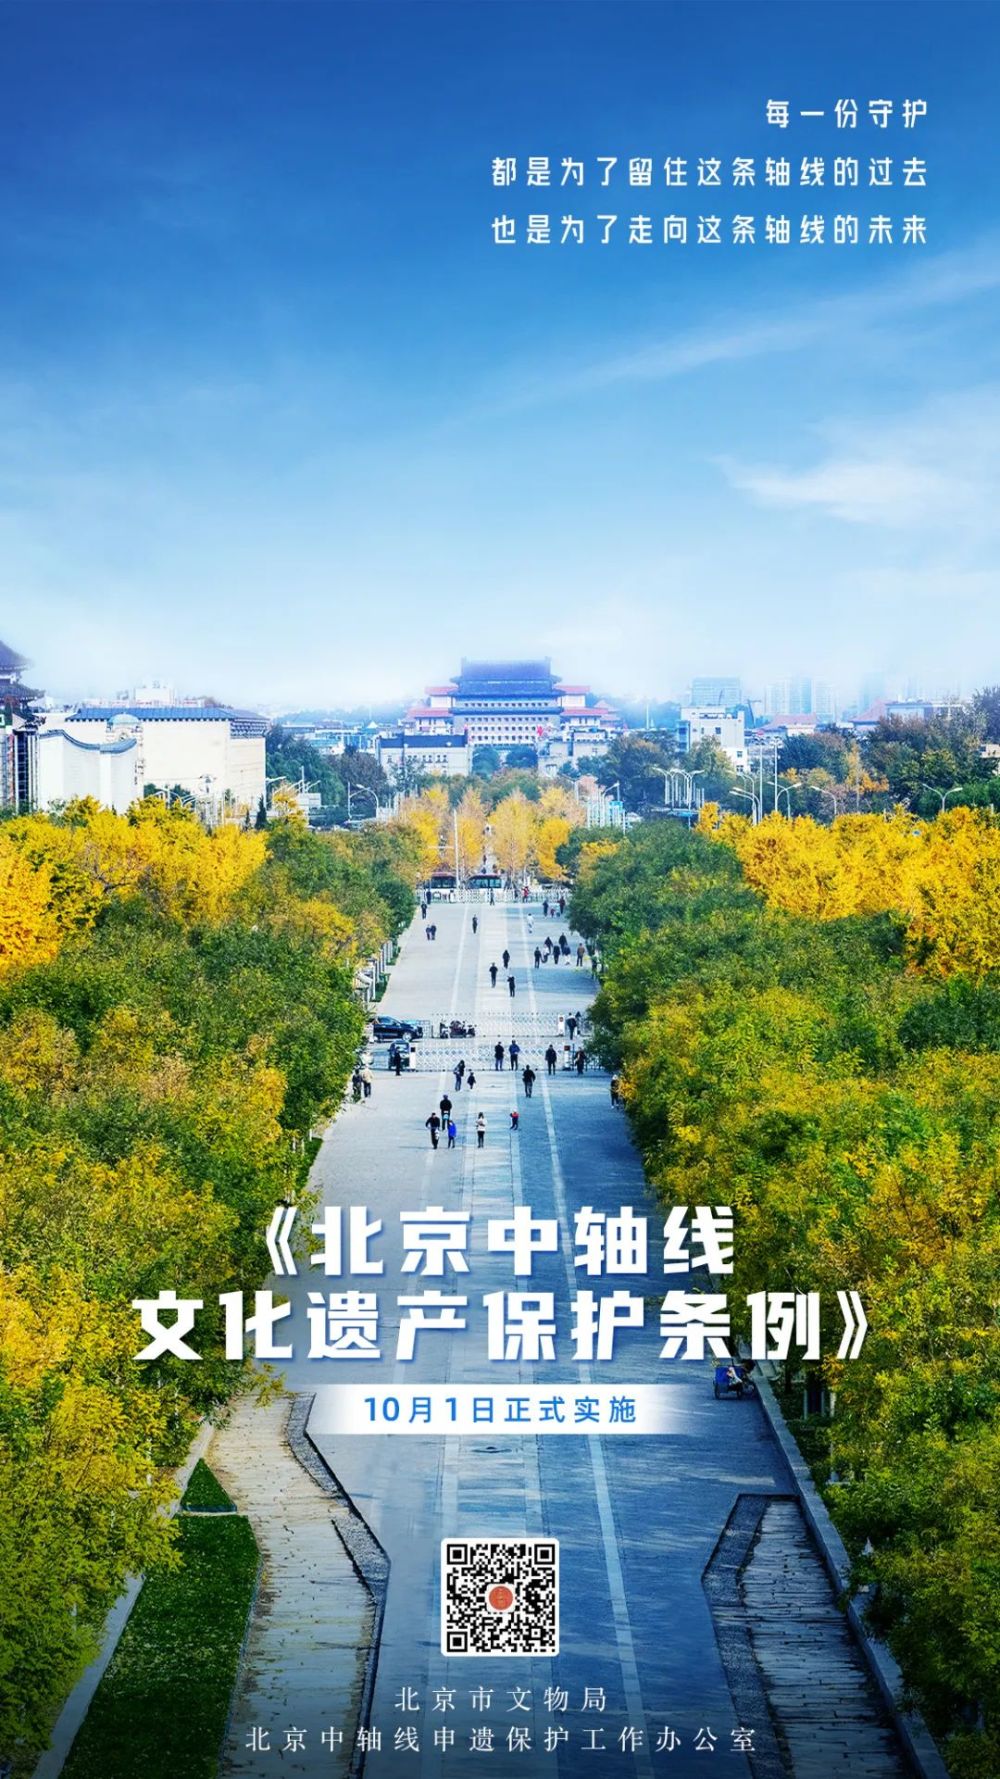 为给北京中轴线保护和列入中国世界文化遗产预备名单